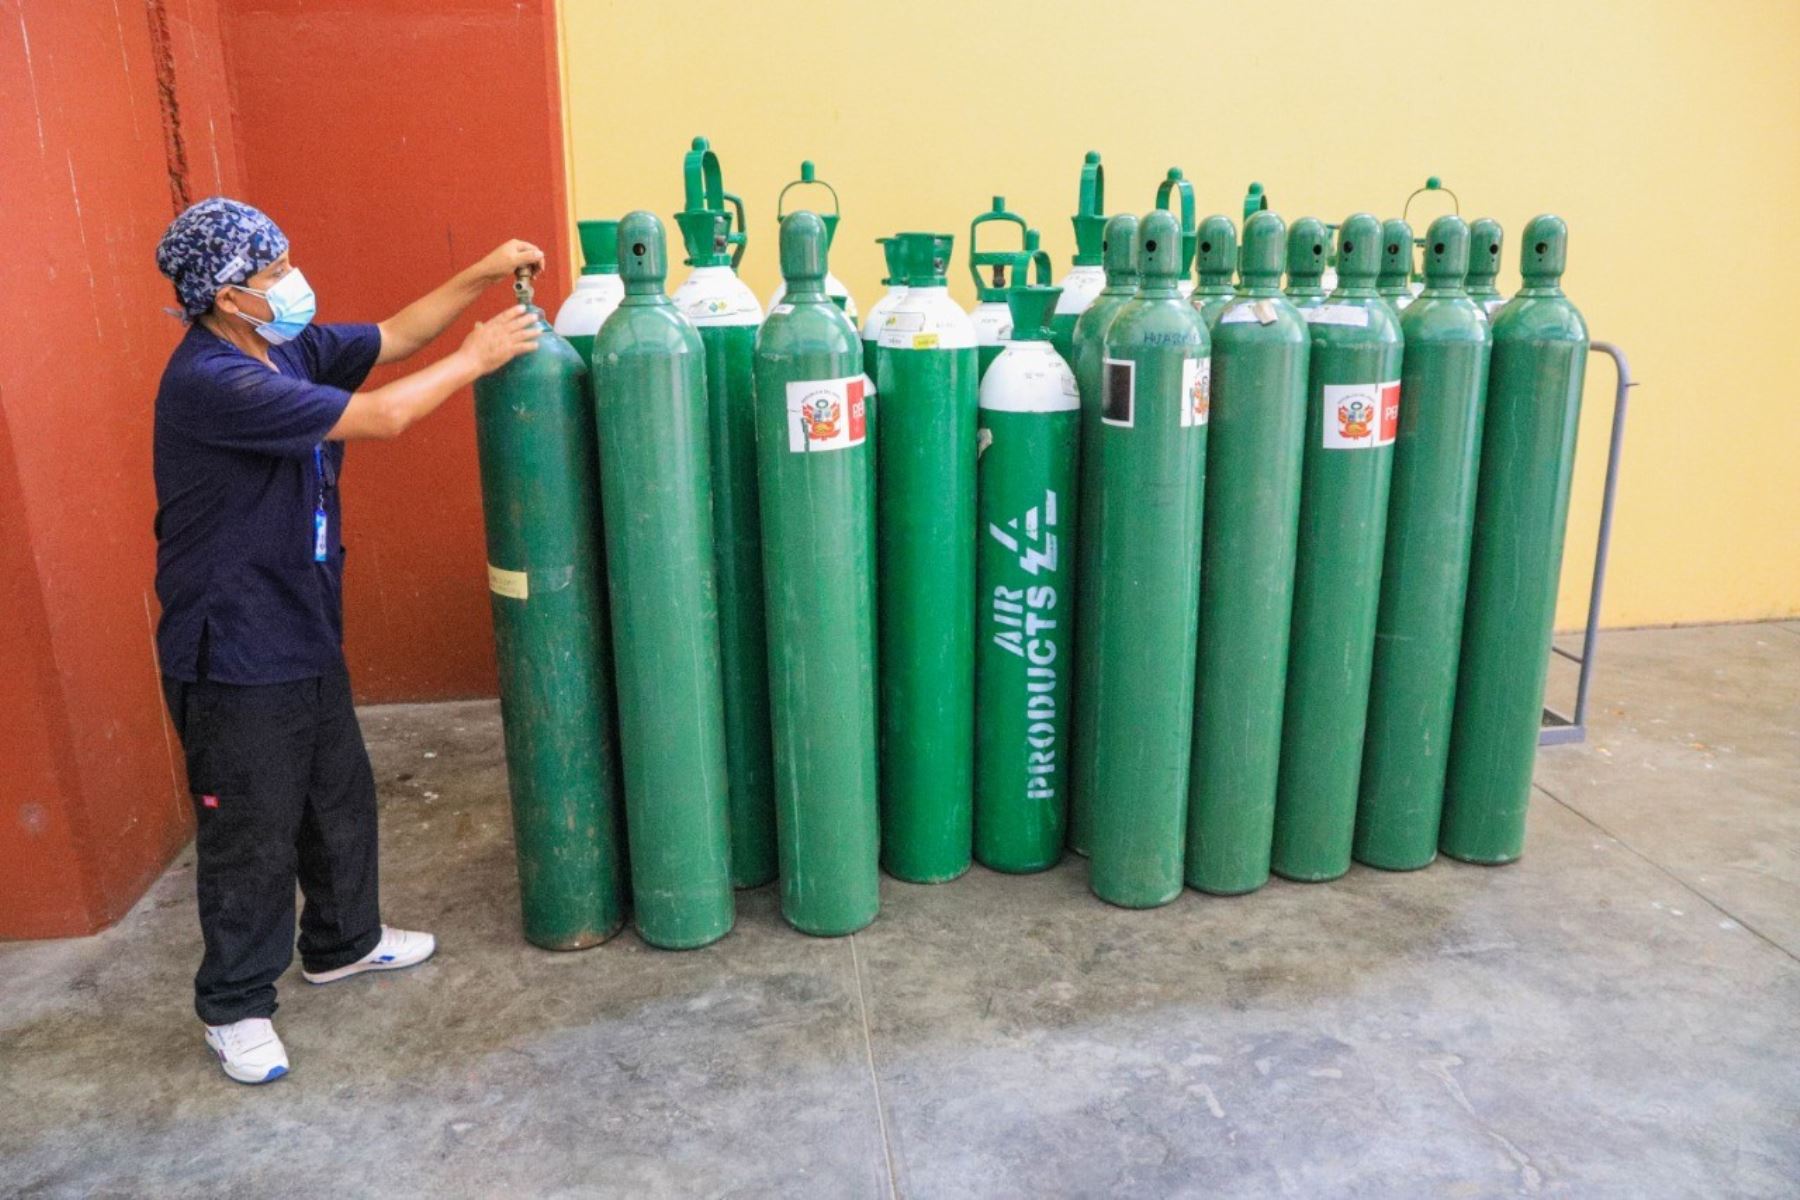 Nueva planta municipal garantiza abastecimiento gratuito de oxígeno medicinal para la población afectada por el covid-19 en Chimbote. Foto: ANDINA/Difusión